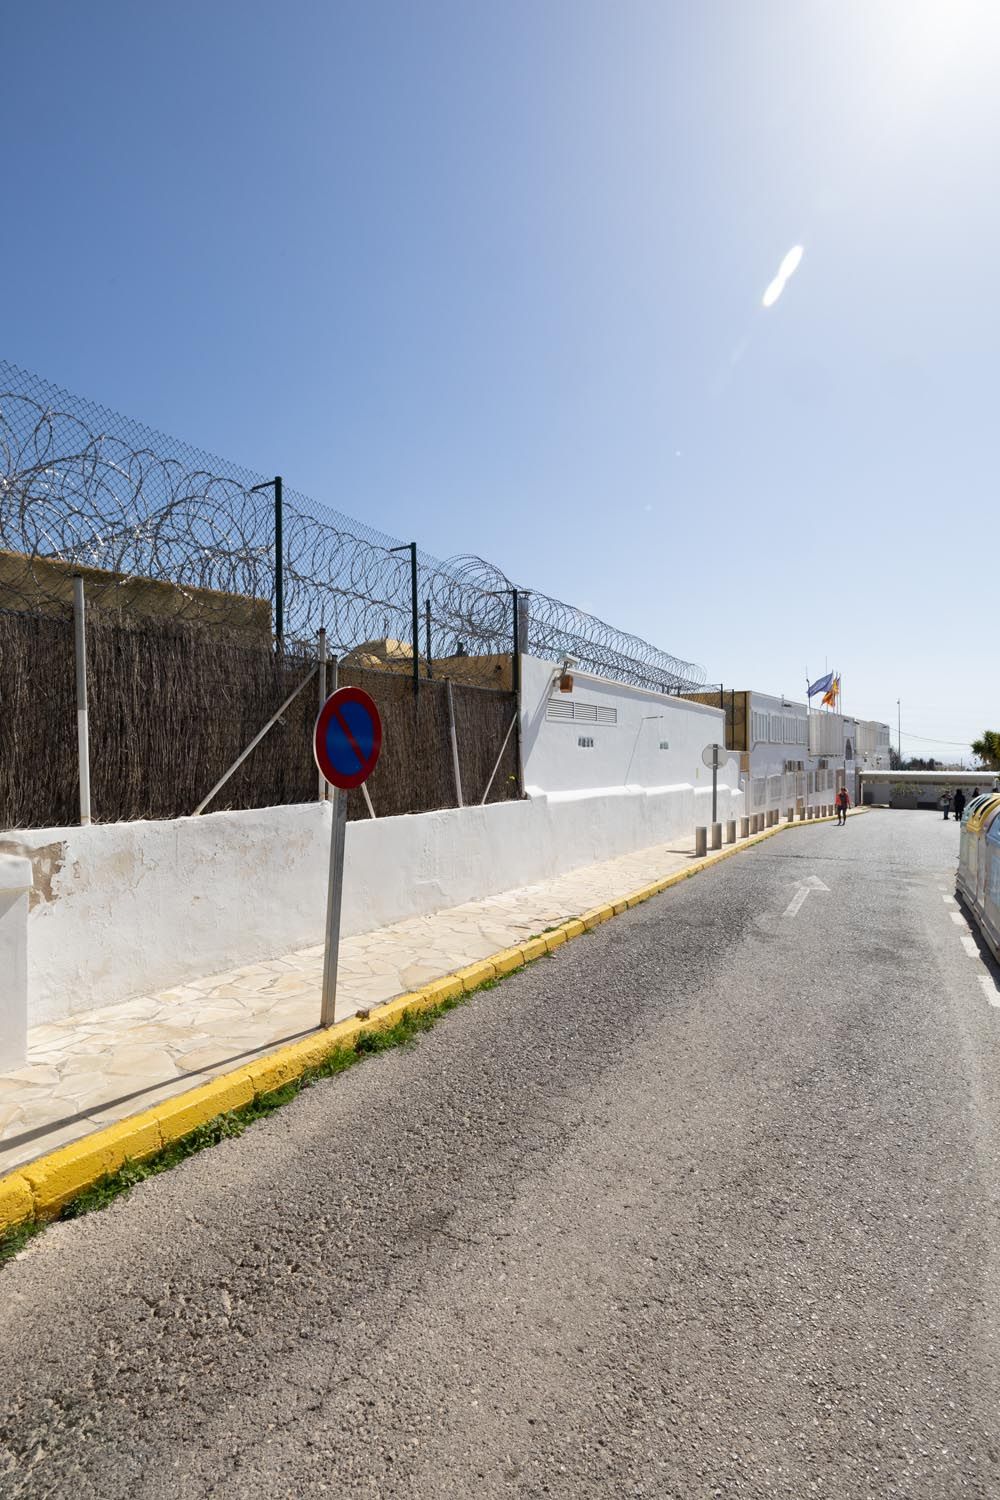 Concentración de los funcionarios de prisiones en Ibiza